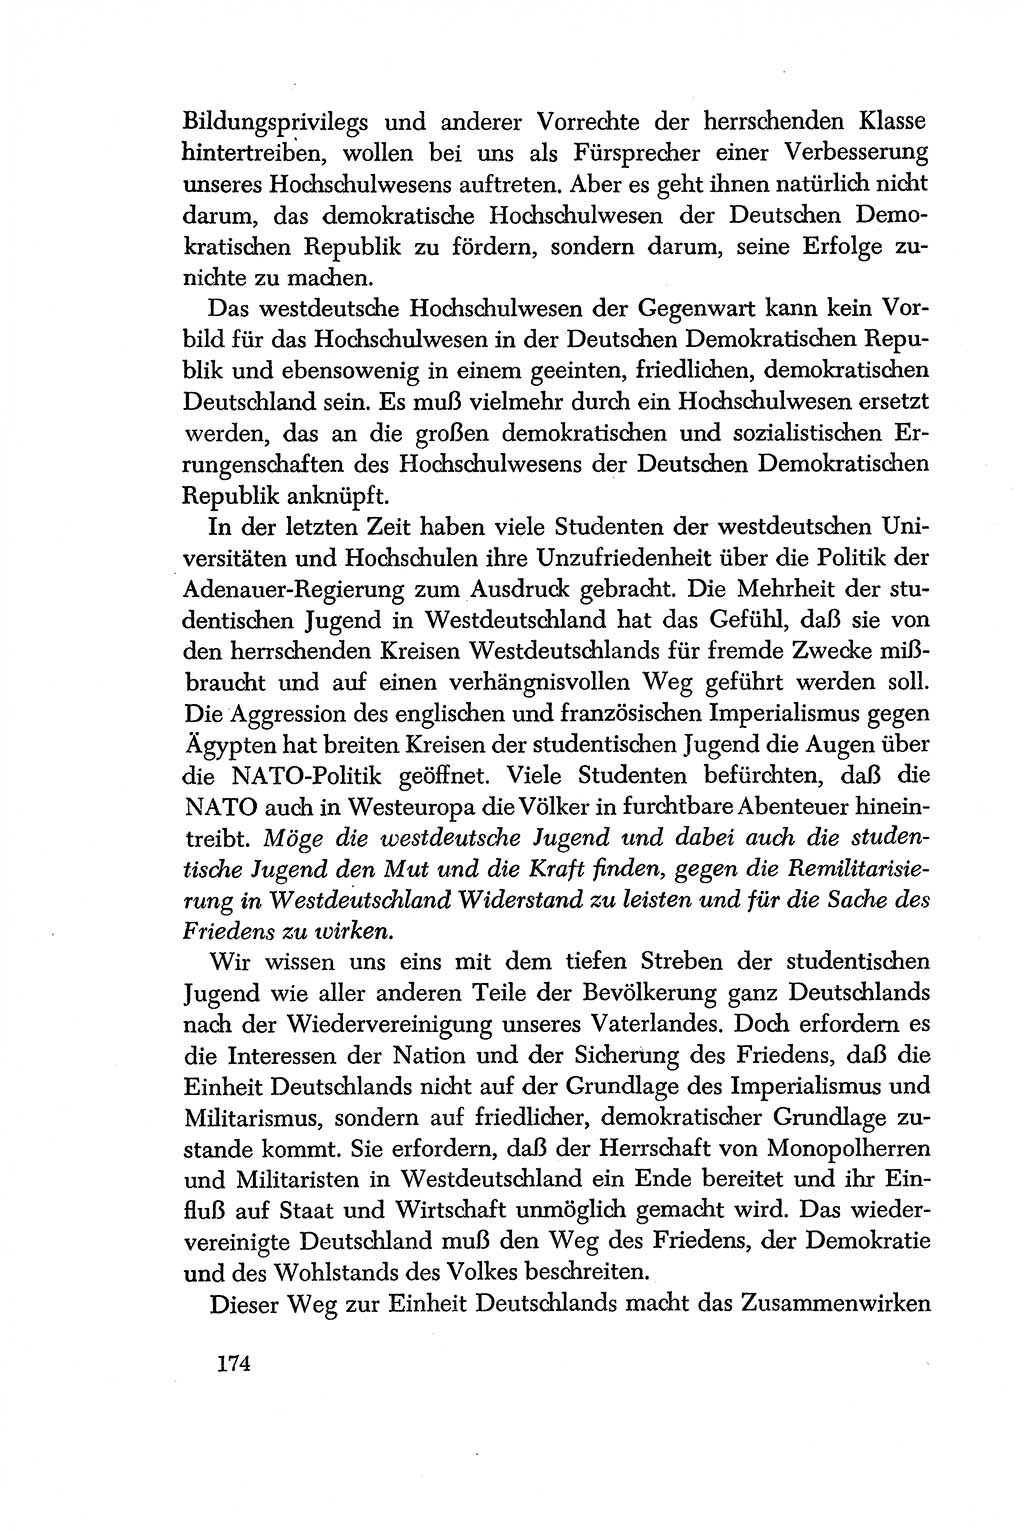 Dokumente der Sozialistischen Einheitspartei Deutschlands (SED) [Deutsche Demokratische Republik (DDR)] 1956-1957, Seite 174 (Dok. SED DDR 1956-1957, S. 174)